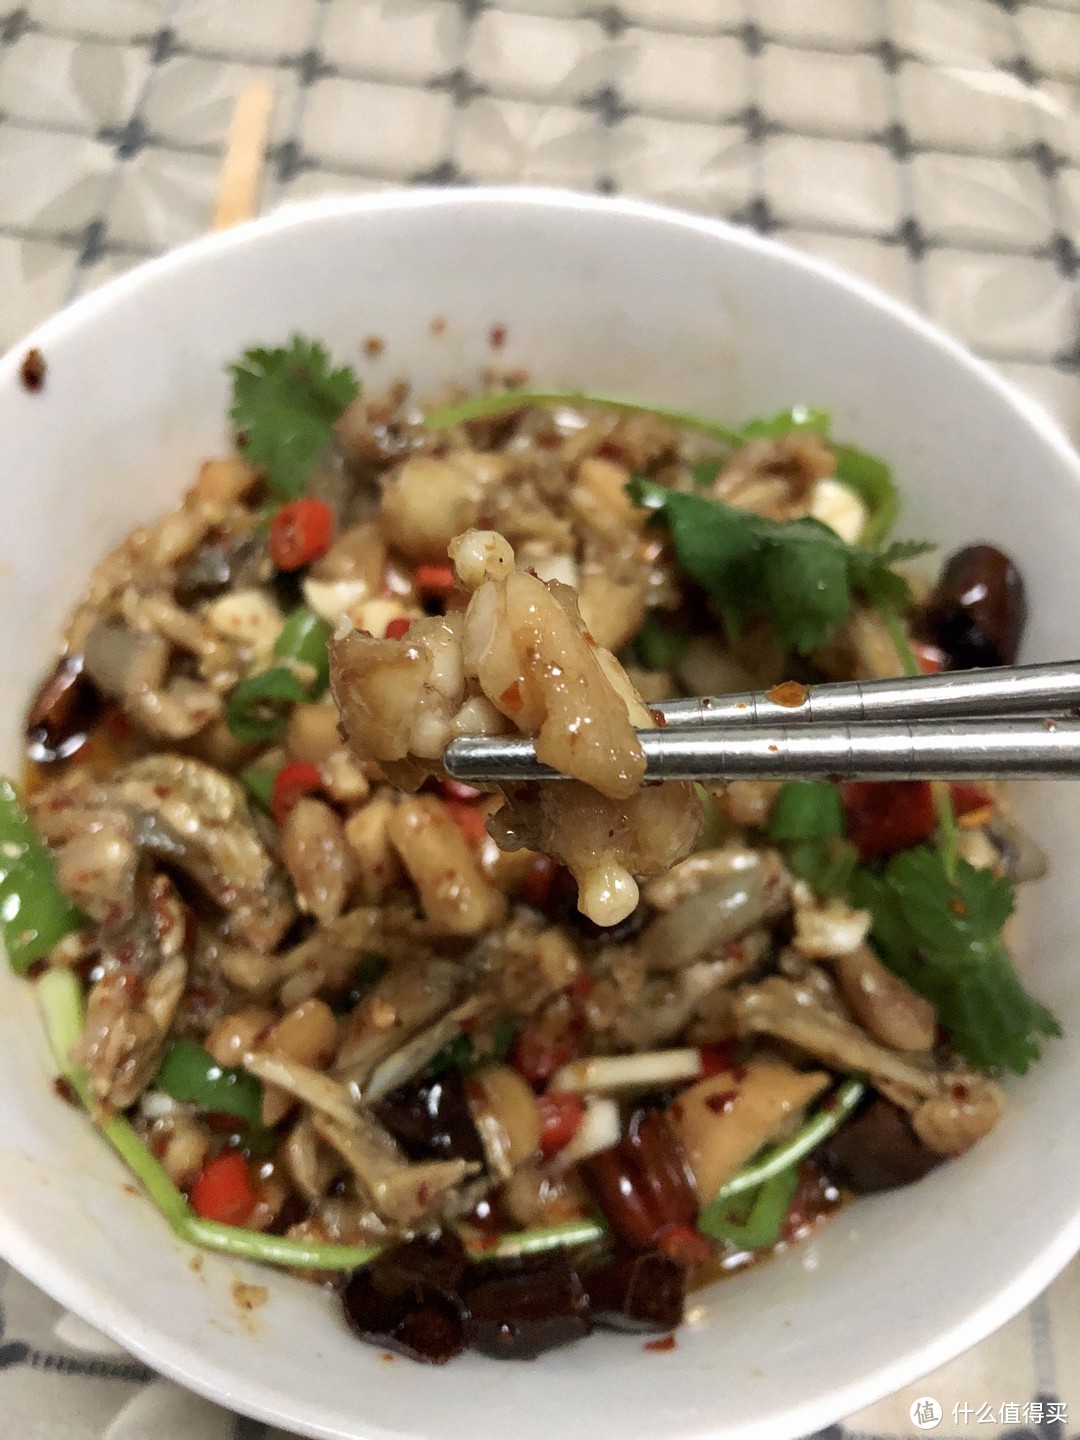 水煮蛙是川菜湘菜中的经典菜